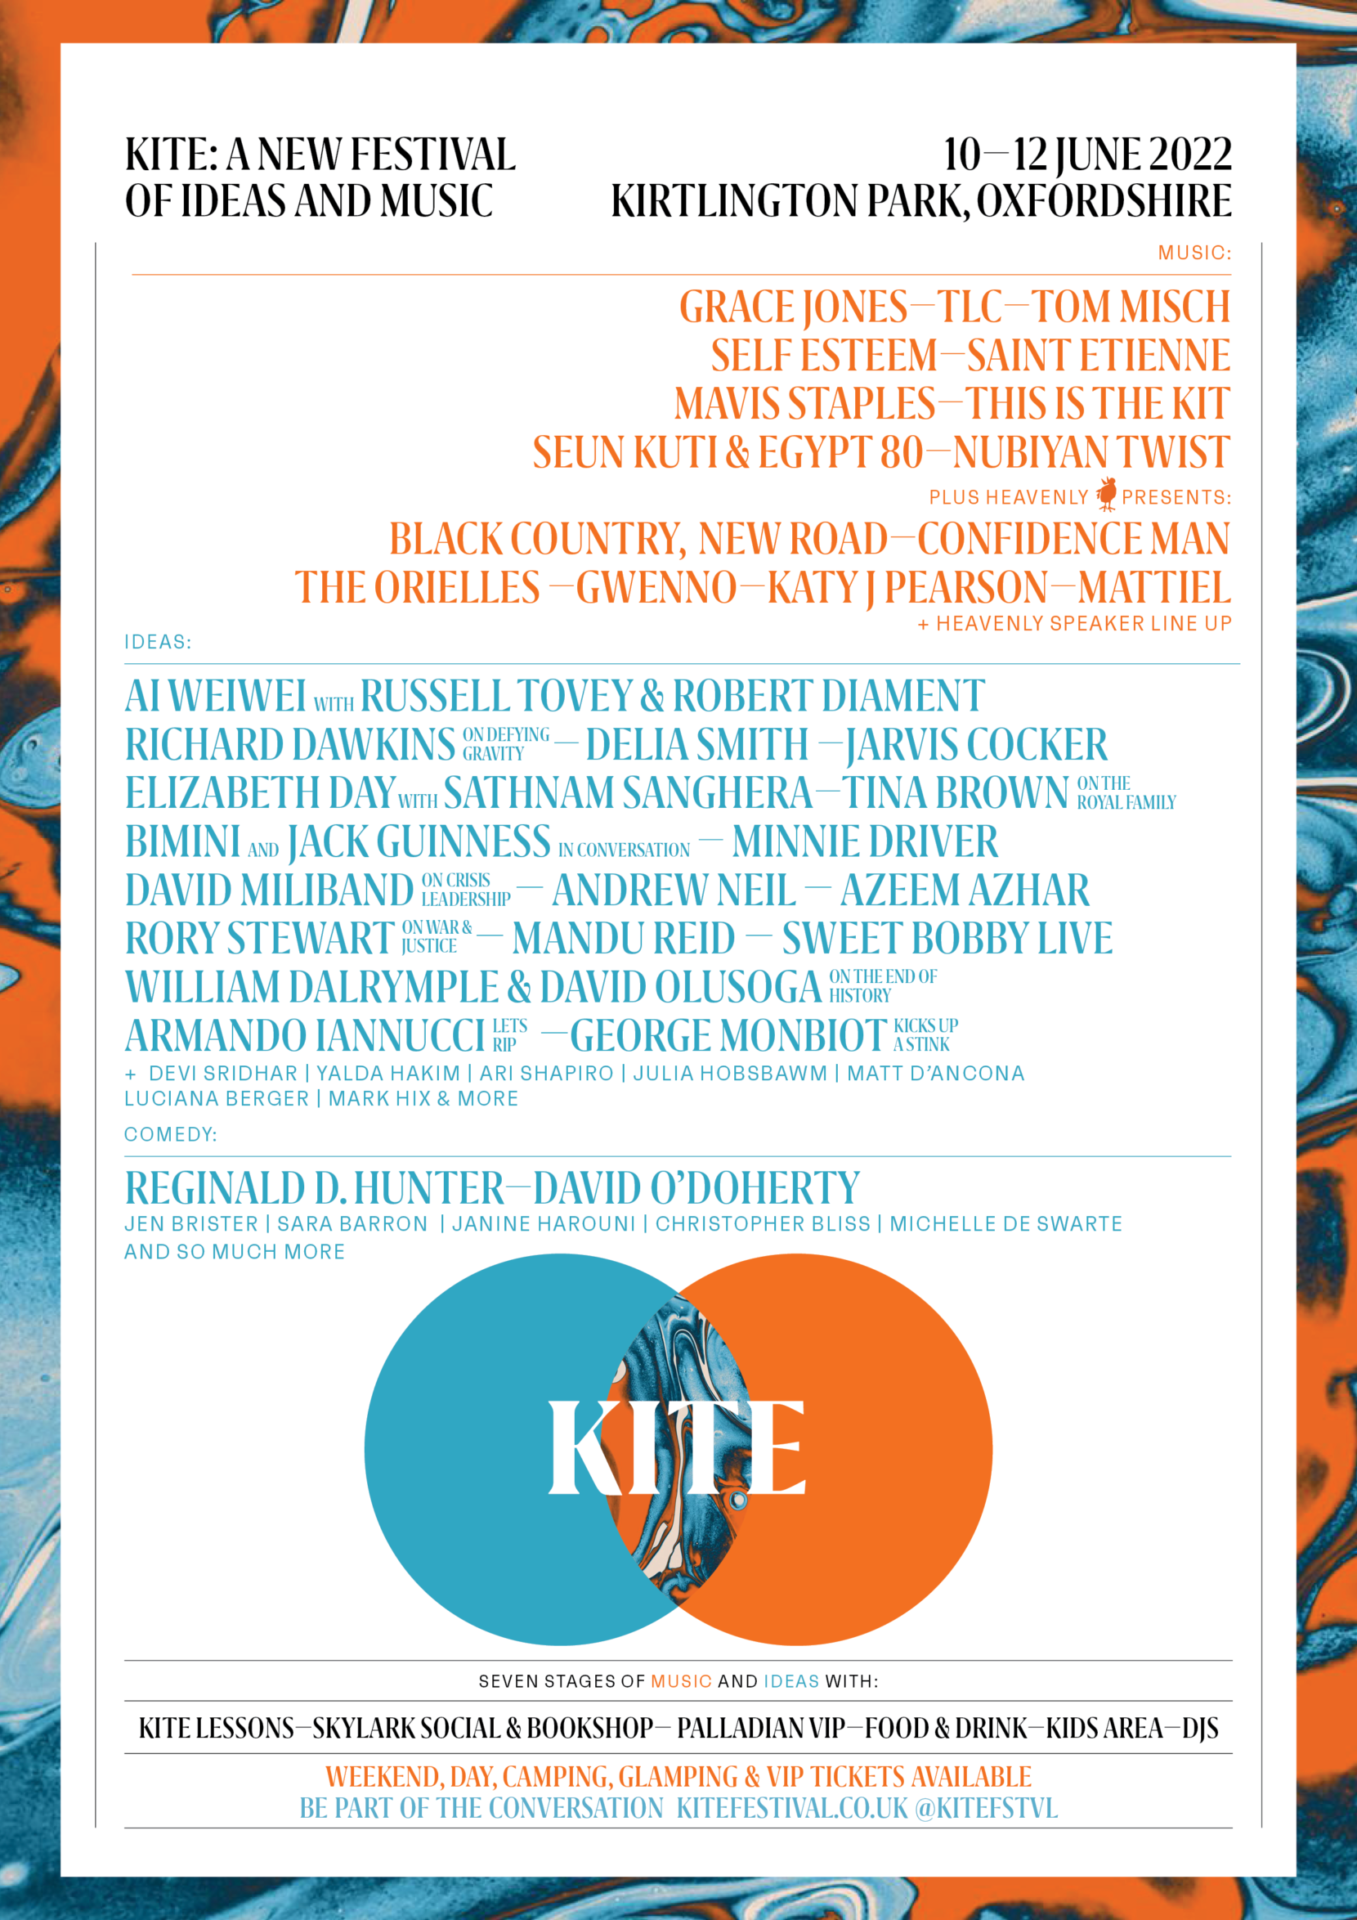 PREVIEW: KITE Festival